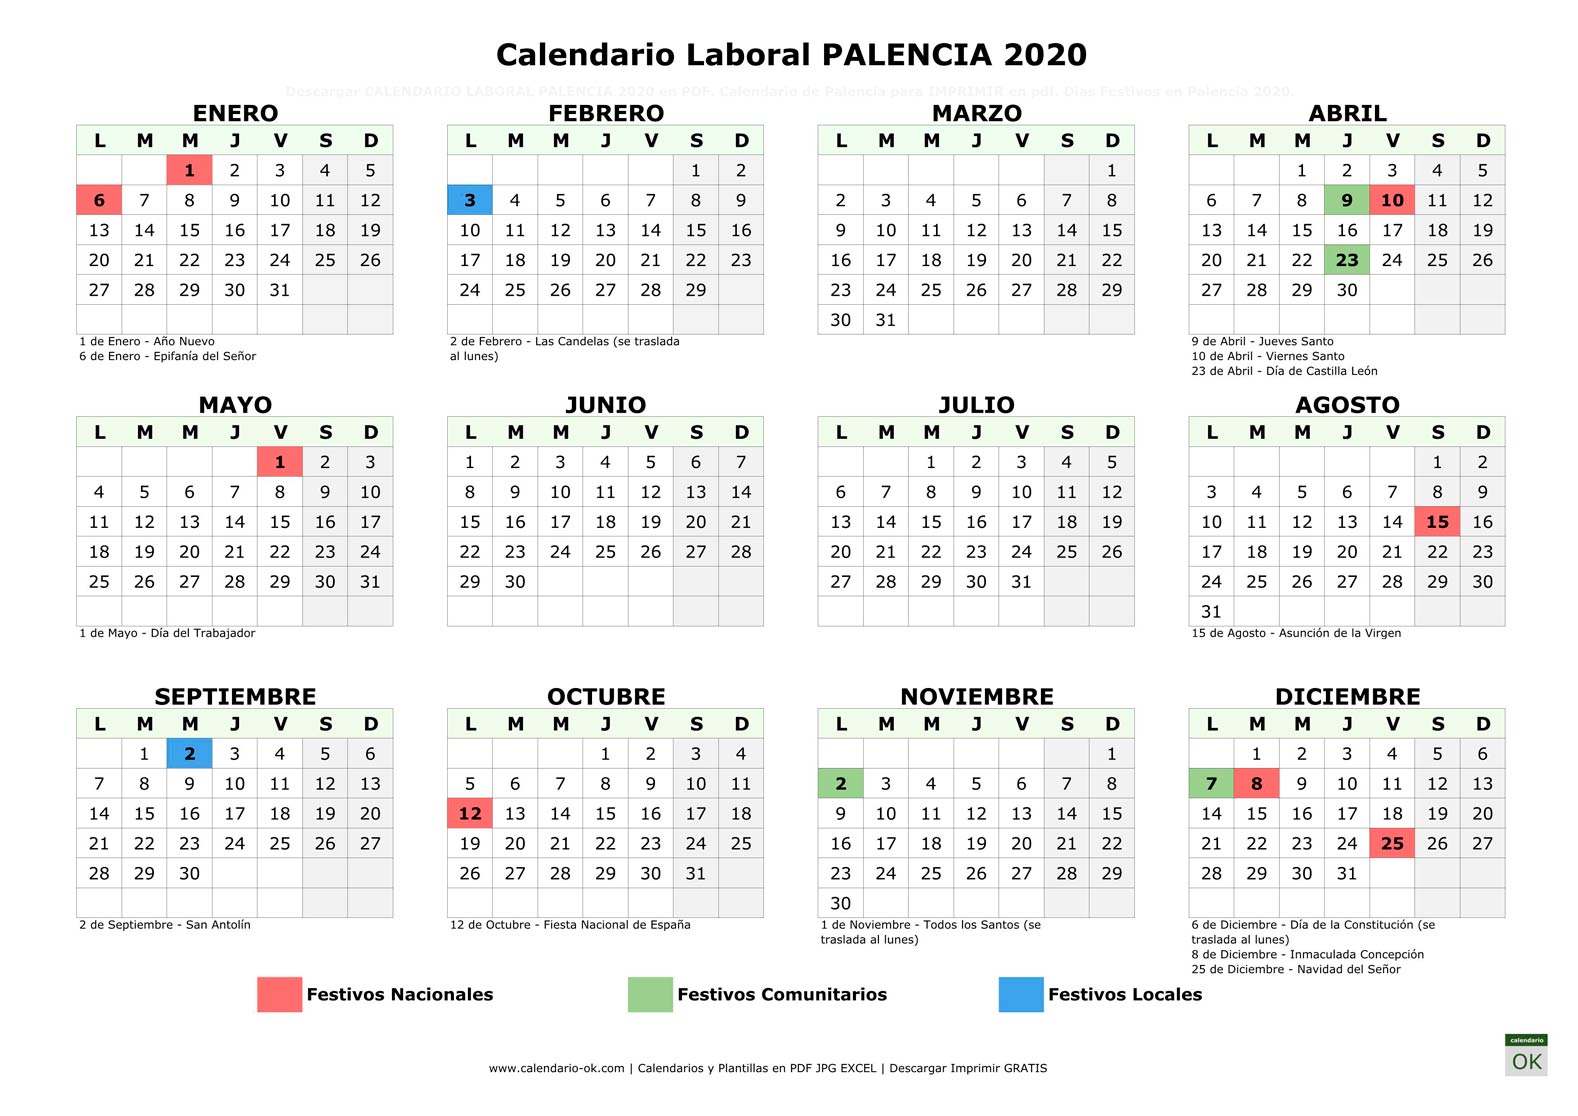 Calendario Laboral PALENCIA 2020 horizontal